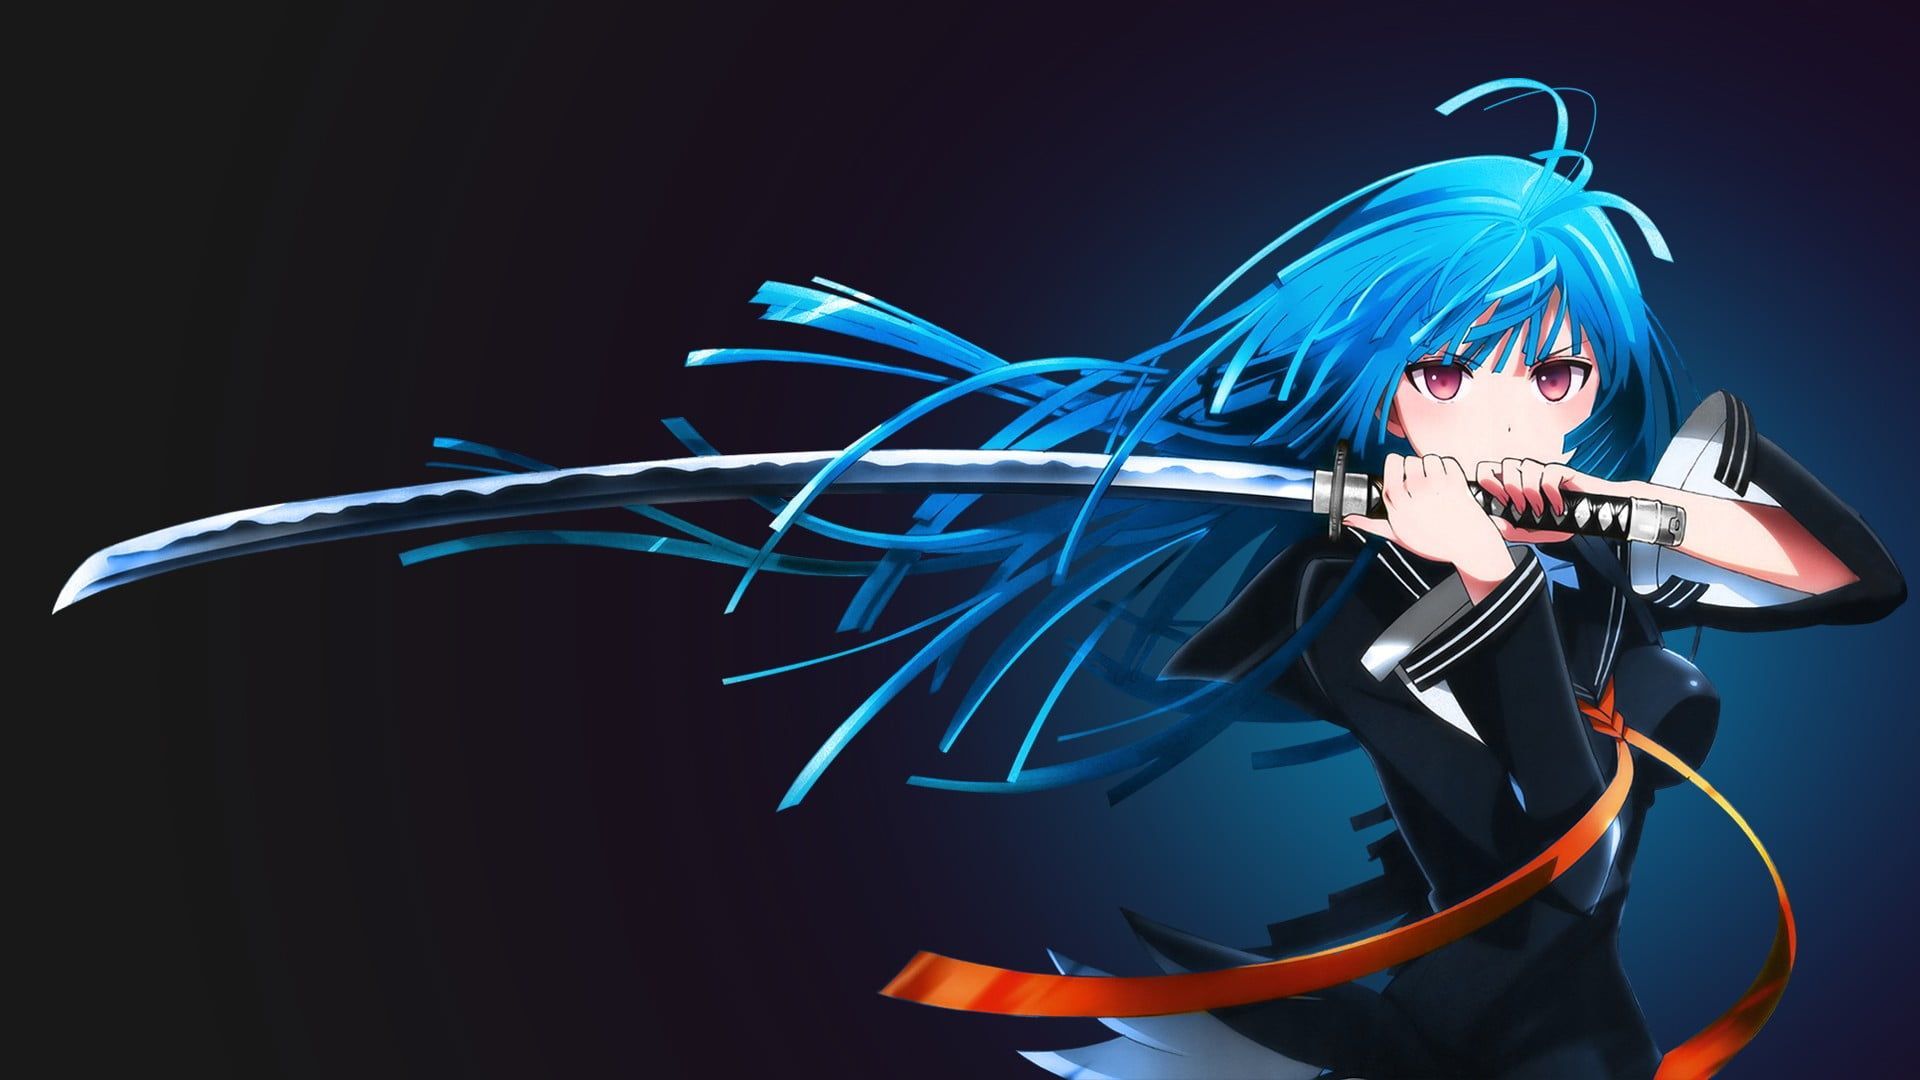 Blue Haired Female Anime Character #katana Kisara Tendo Black Bullet Anime Girls #anime #sword Blue Hair Long Hair P #wallpaper #hdwallpa. 壁紙 Hd, 壁紙 アニメ, 壁紙